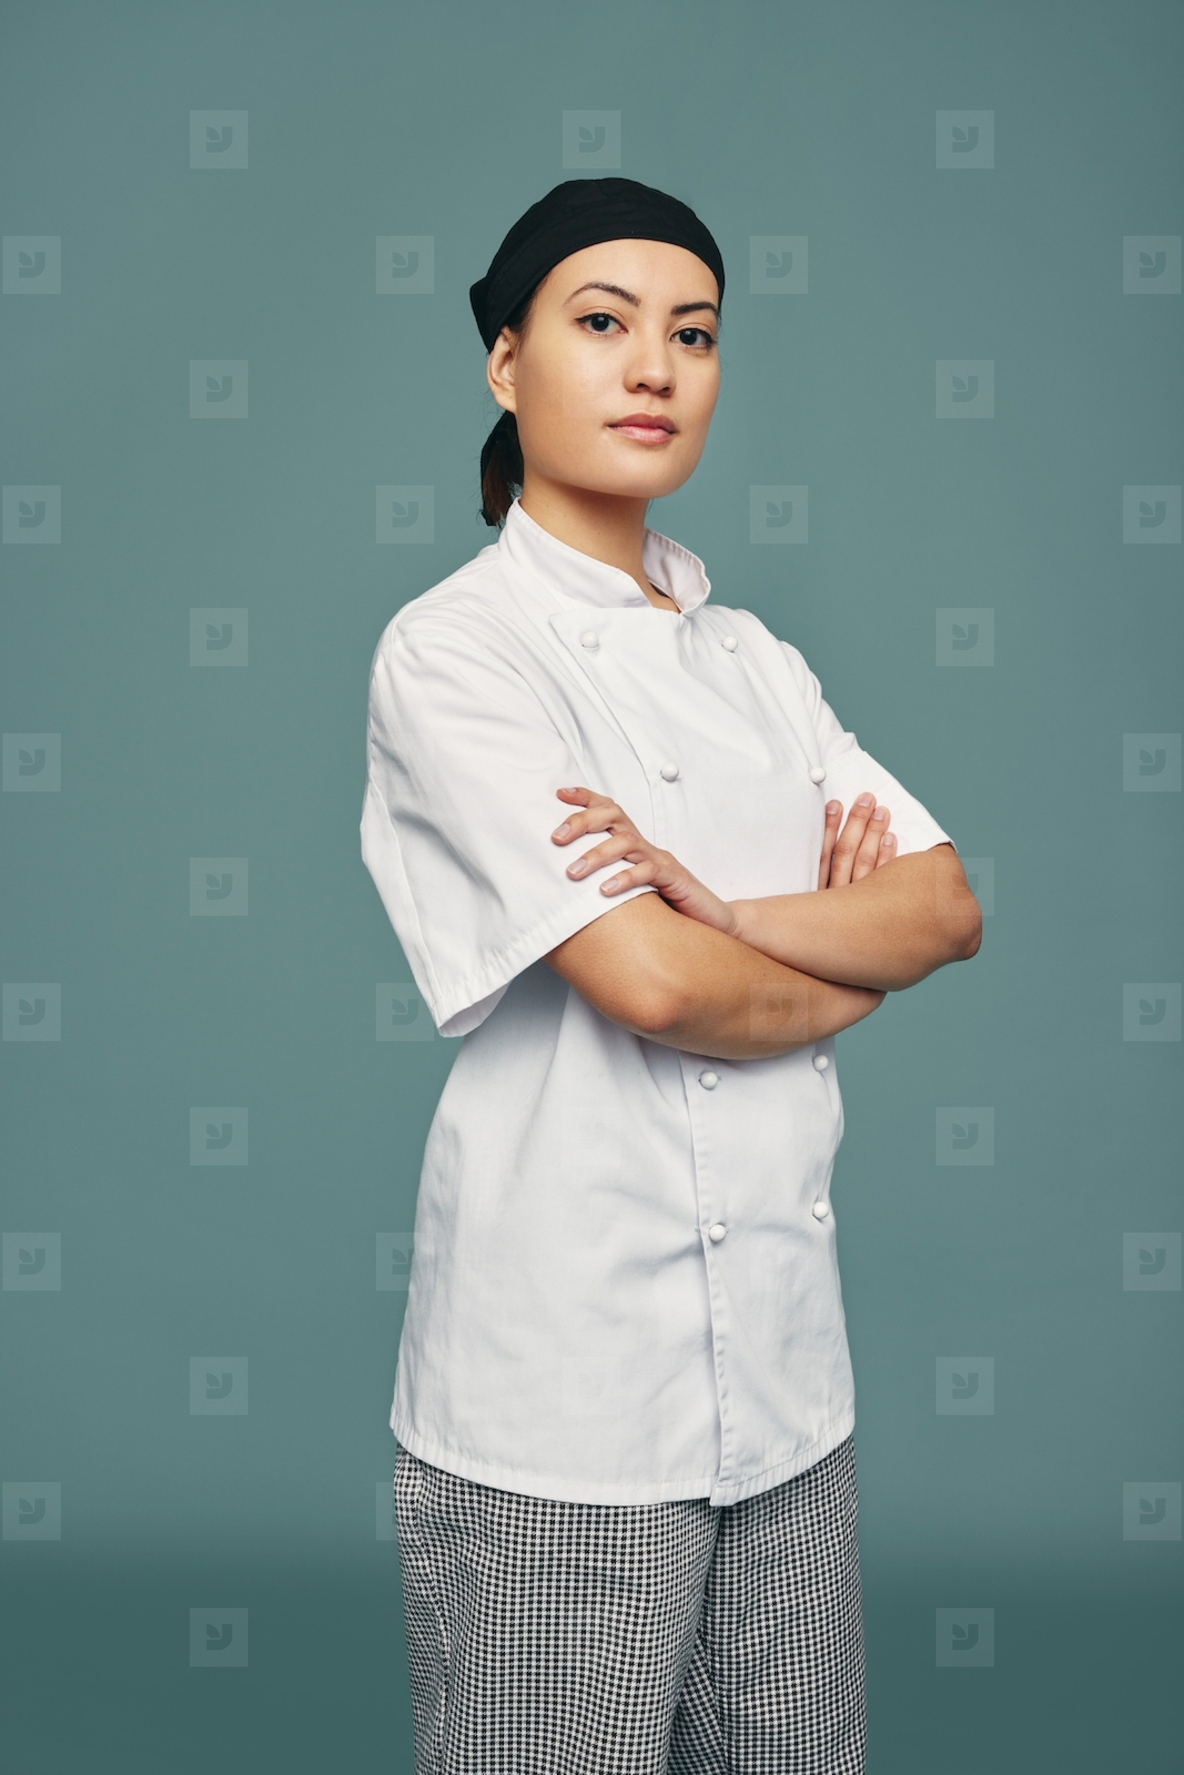 Confident female chef standing in a studio